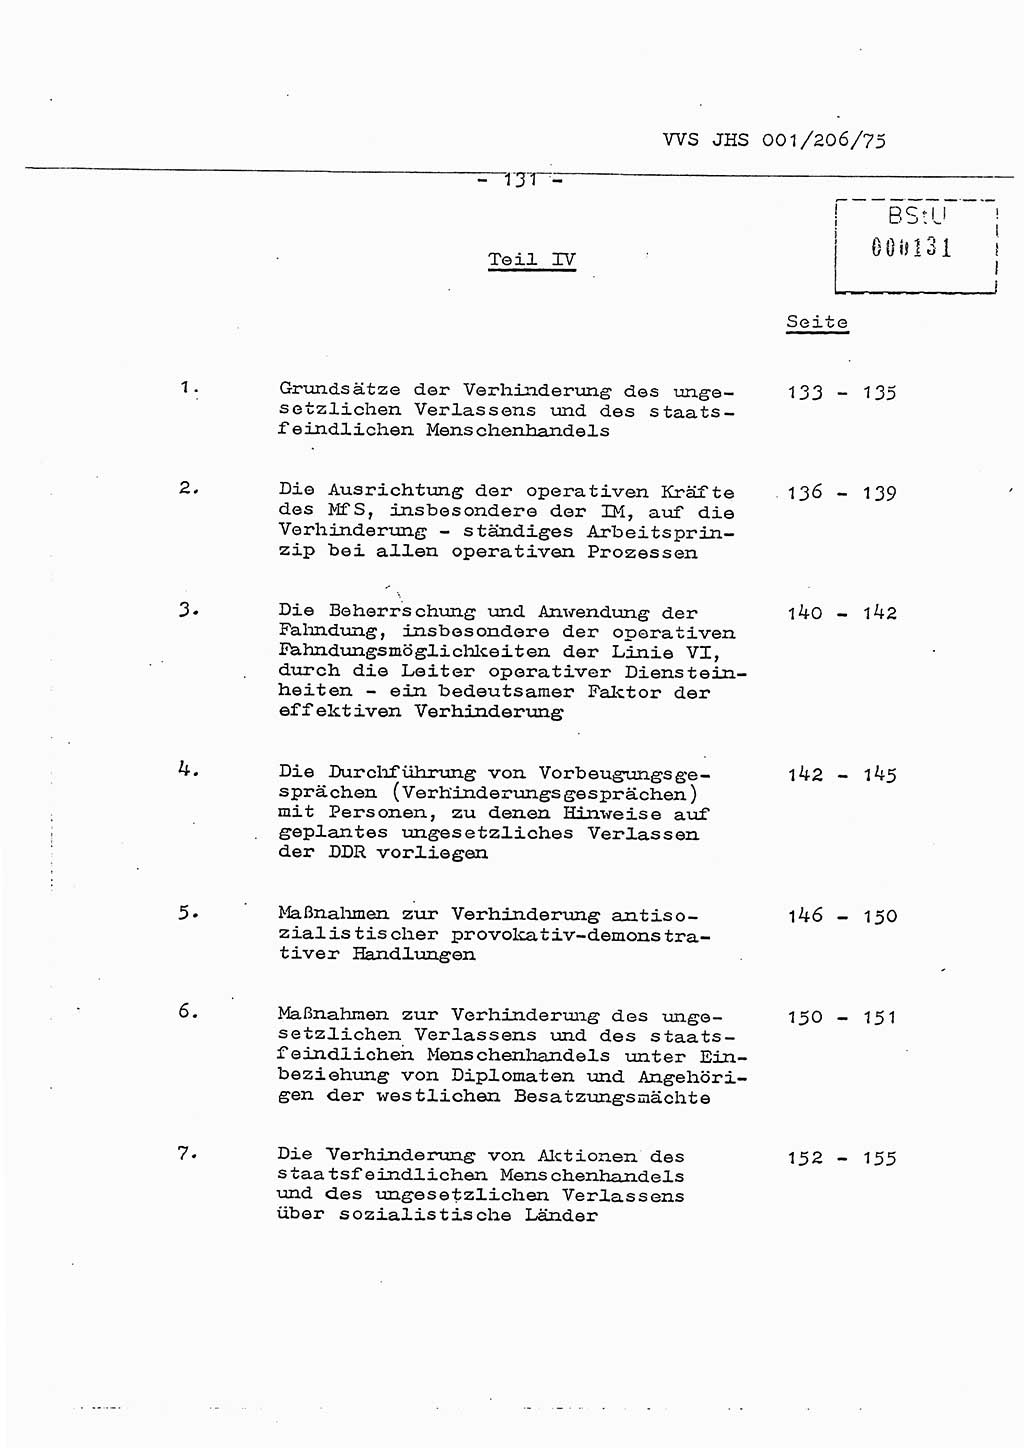 Dissertation Generalmajor Manfred Hummitzsch (Leiter der BV Leipzig), Generalmajor Heinz Fiedler (HA Ⅵ), Oberst Rolf Fister (HA Ⅸ), Ministerium für Staatssicherheit (MfS) [Deutsche Demokratische Republik (DDR)], Juristische Hochschule (JHS), Vertrauliche Verschlußsache (VVS) 001-206/75, Potsdam 1975, Seite 131 (Diss. MfS DDR JHS VVS 001-206/75 1975, S. 131)